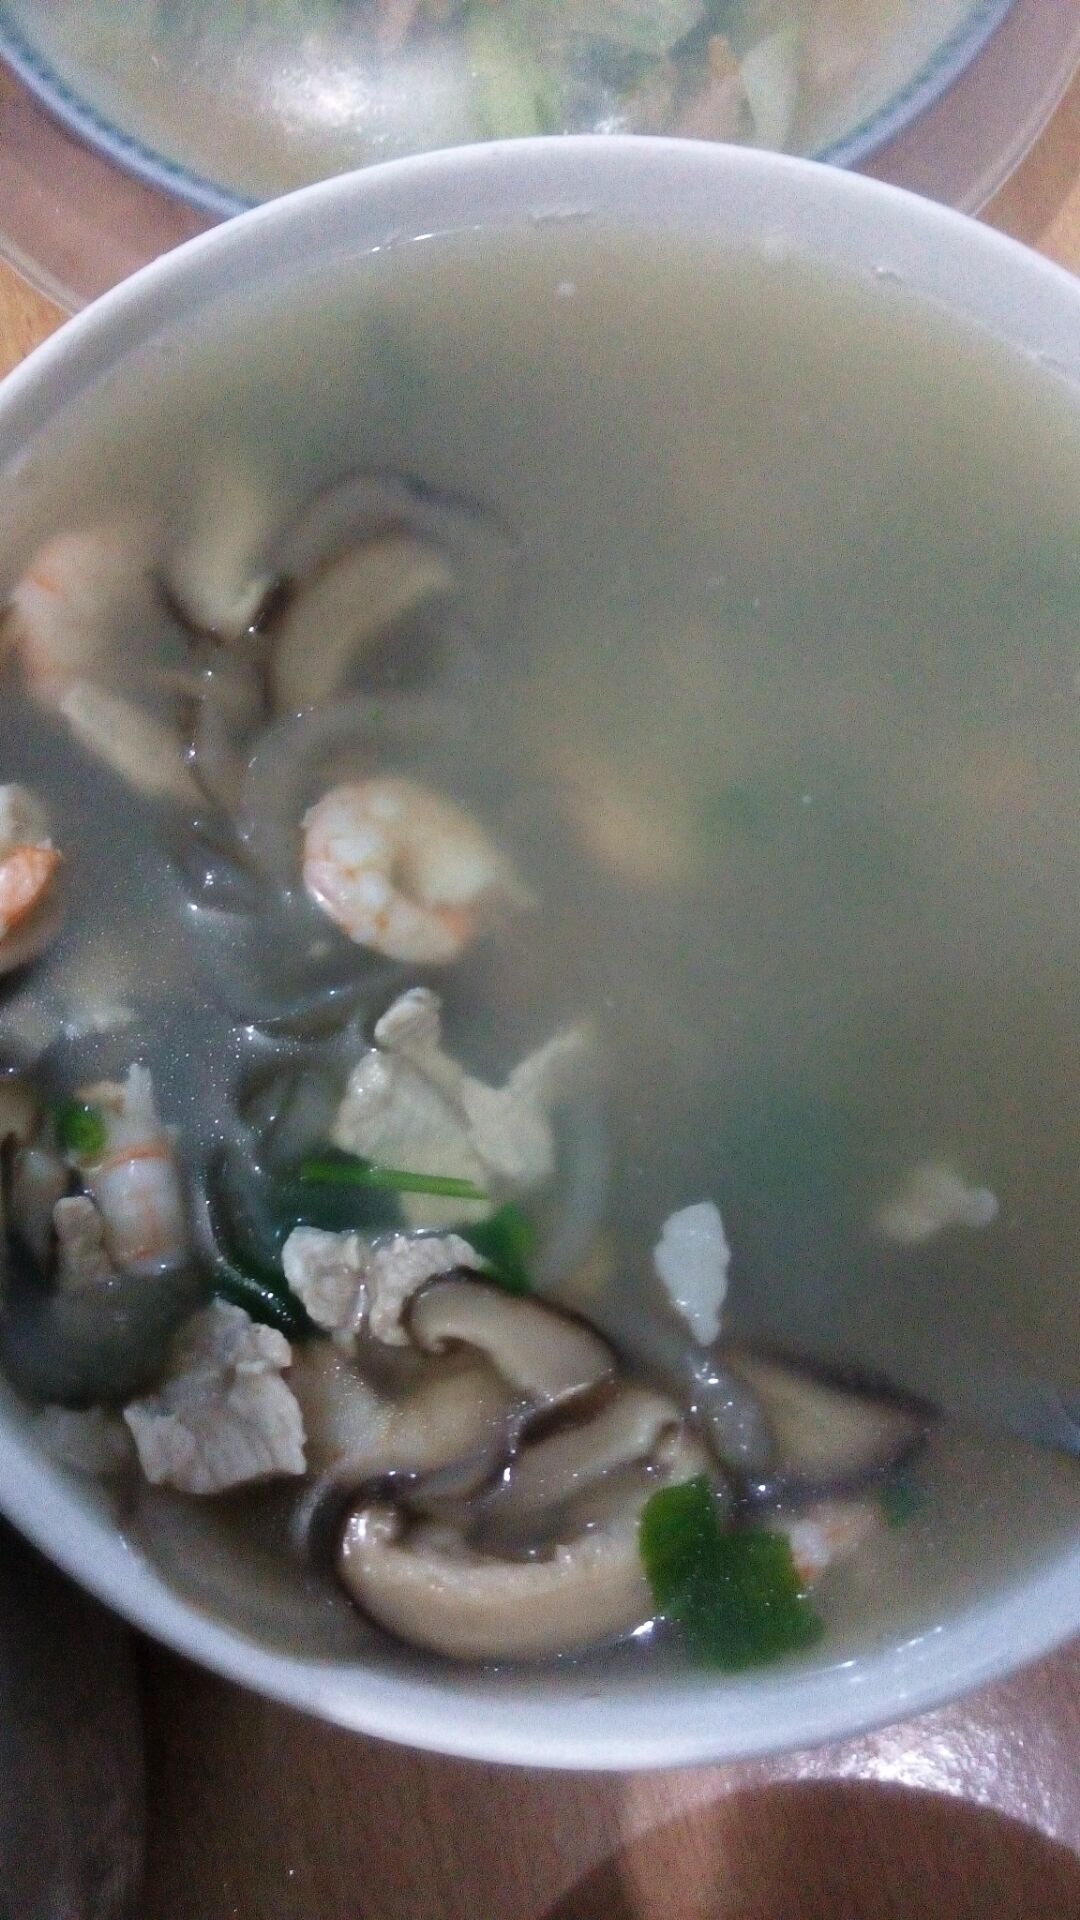 菌菇海参汤,菌菇海参汤的家常做法 - 美食杰菌菇海参汤做法大全